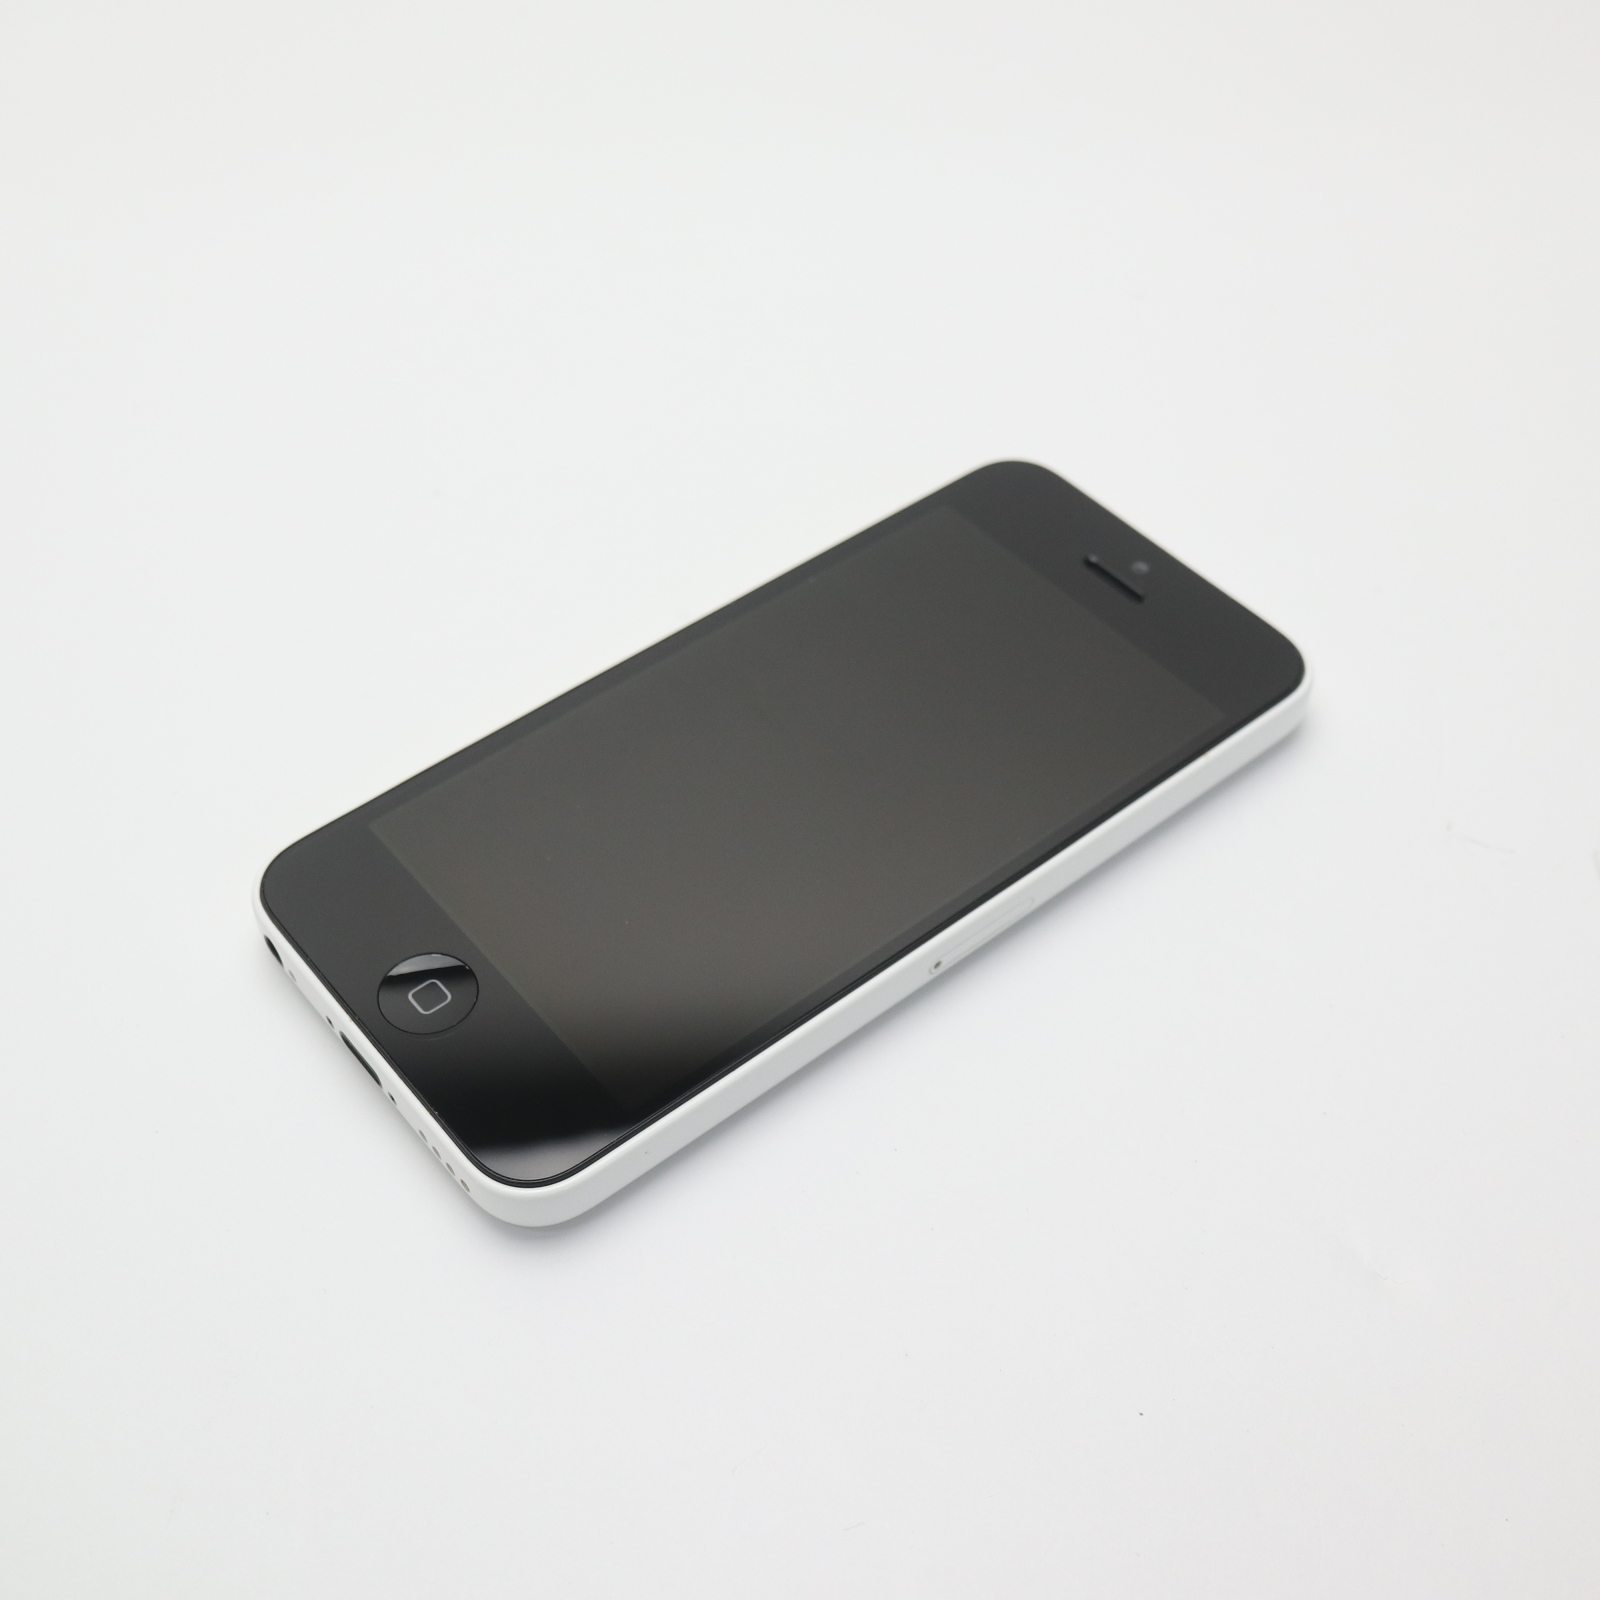 Apple iPhone 5c 16GB ホワイト au iPhone iPhone 5c iPhone本体の商品画像